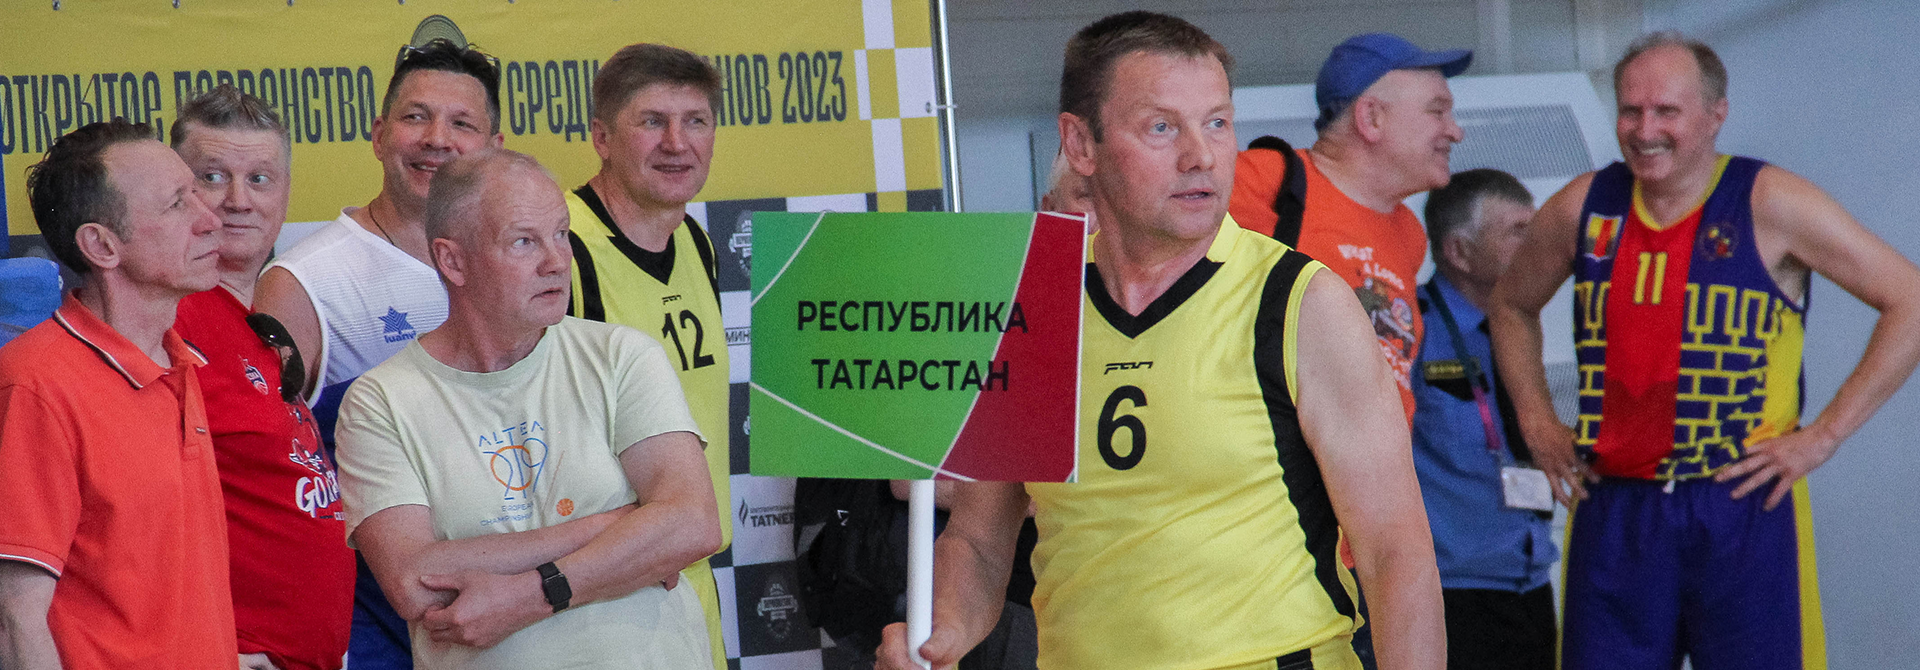 Итоги Первенства России по баскетболу среди ветеранов